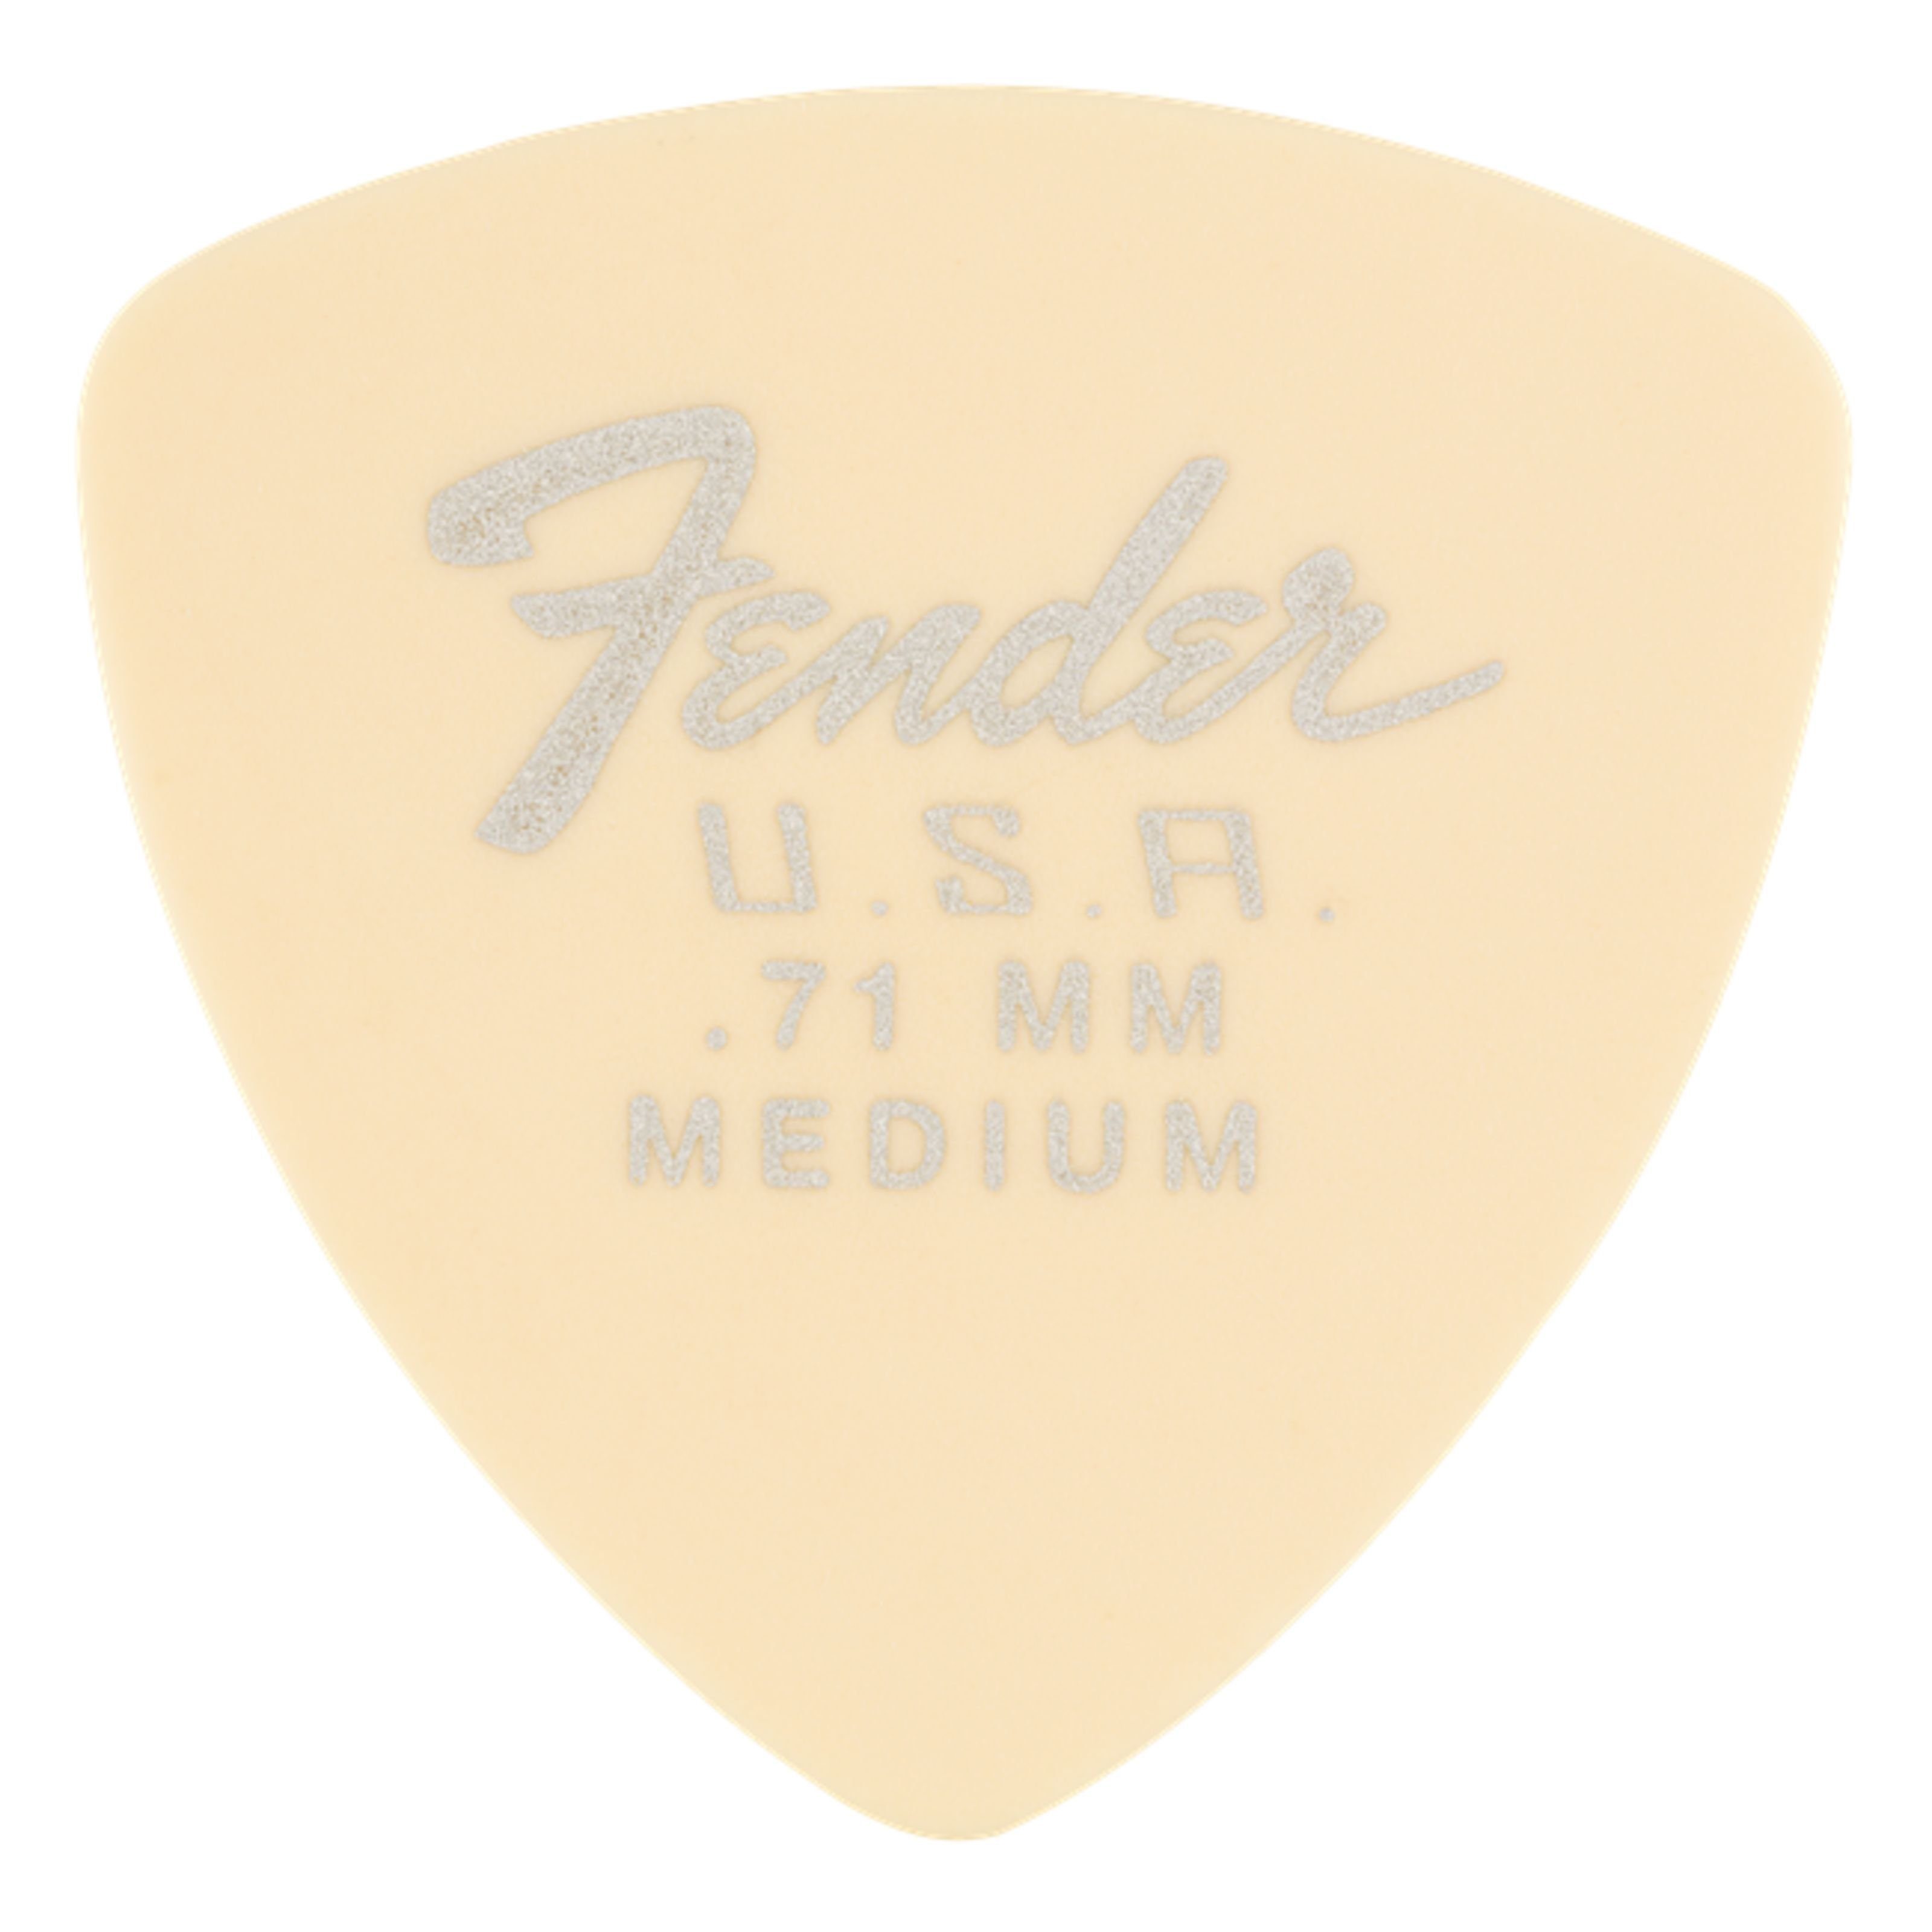 Fender mm 346 Dura-Tone Picks Plektren Spielzeug-Musikinstrument, 0,71 Set -